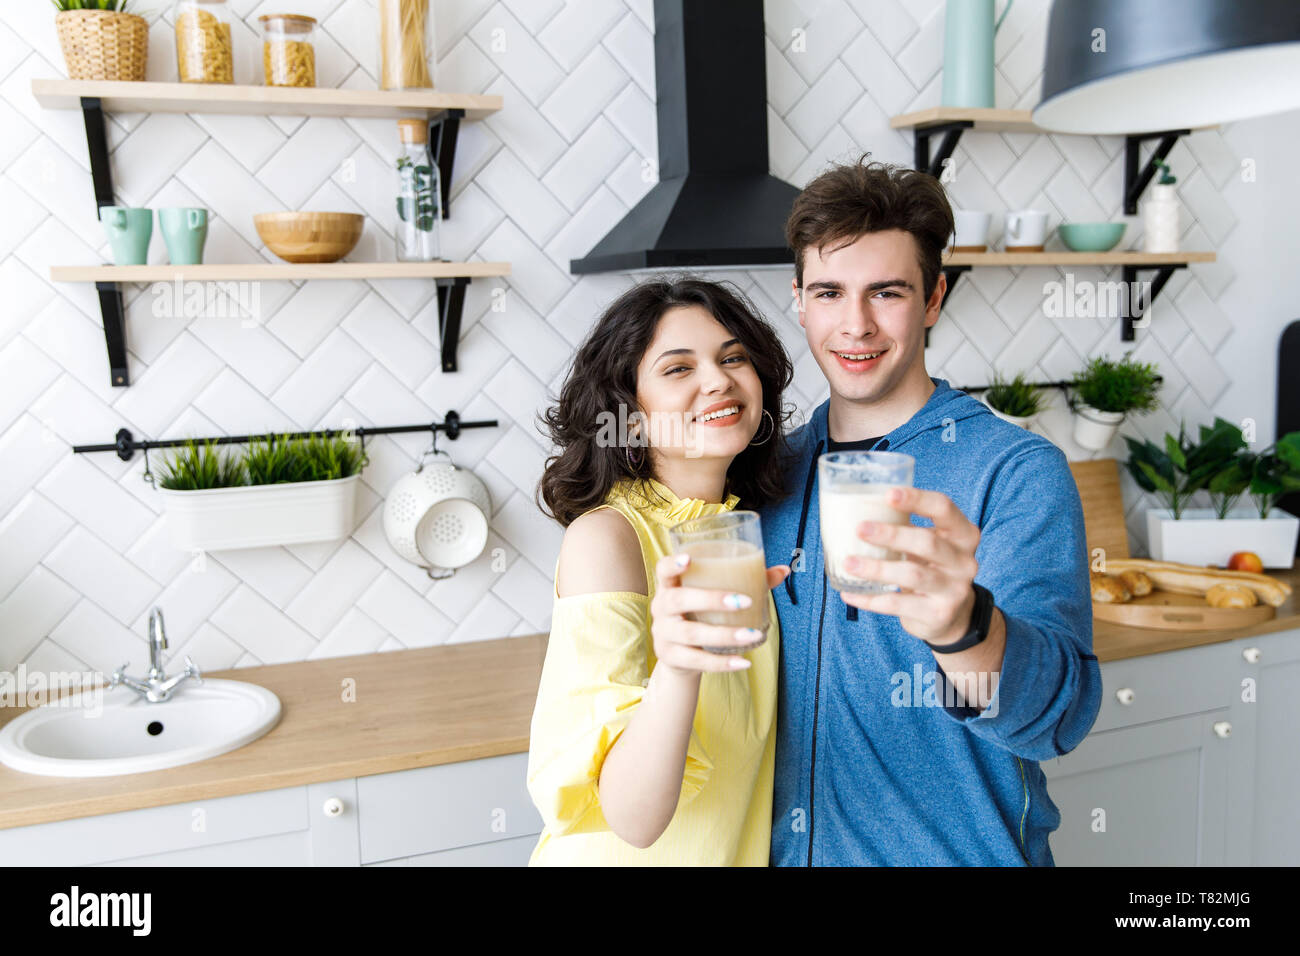 Glückliches junges Paar essen Saft in Ihre Küche. Ein netter Kerl und ein Mädchen Saft trinken aus Gläsern und lächelnd Stockfoto